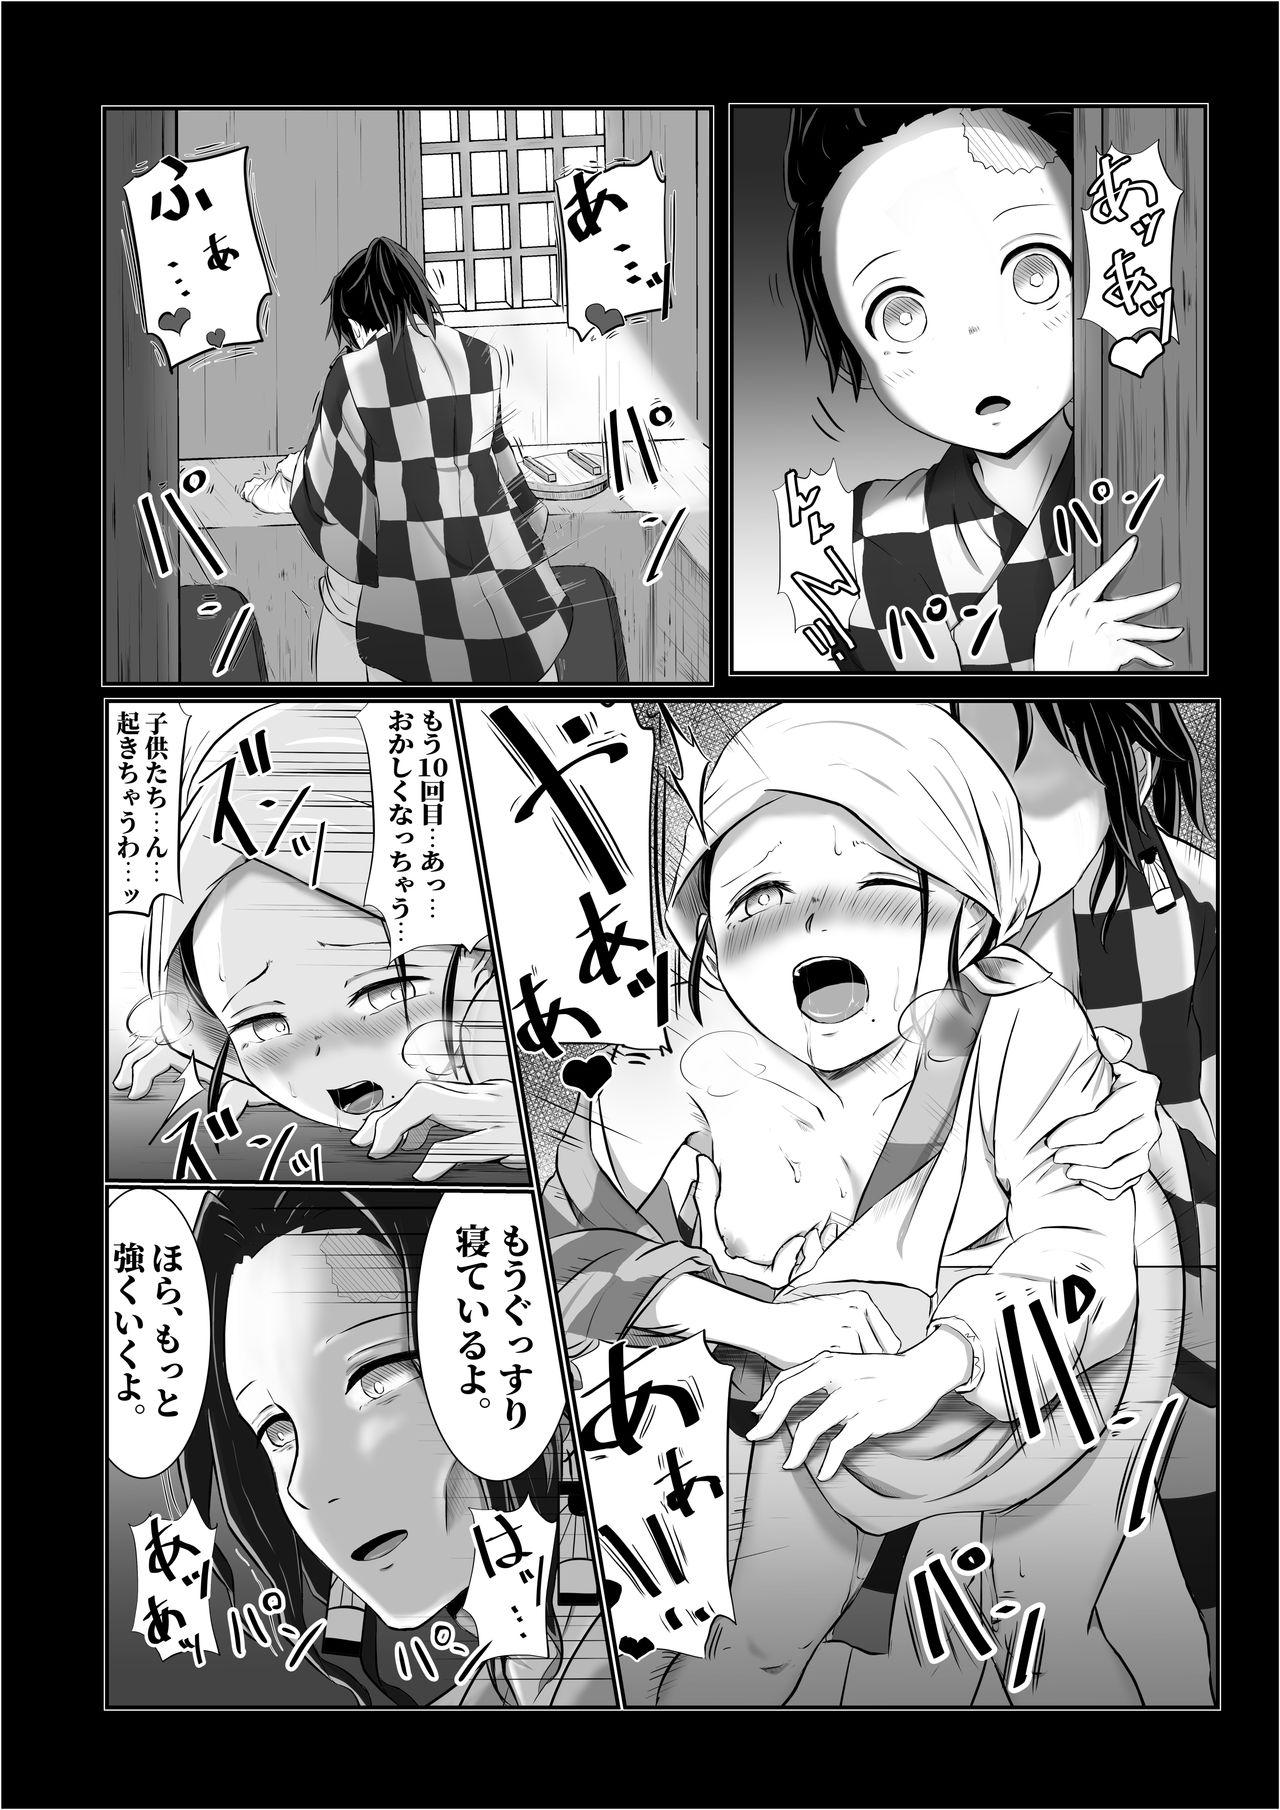 Hardcore Porno Hinokami Sex. - Kimetsu no yaiba | demon slayer Comendo - Page 21